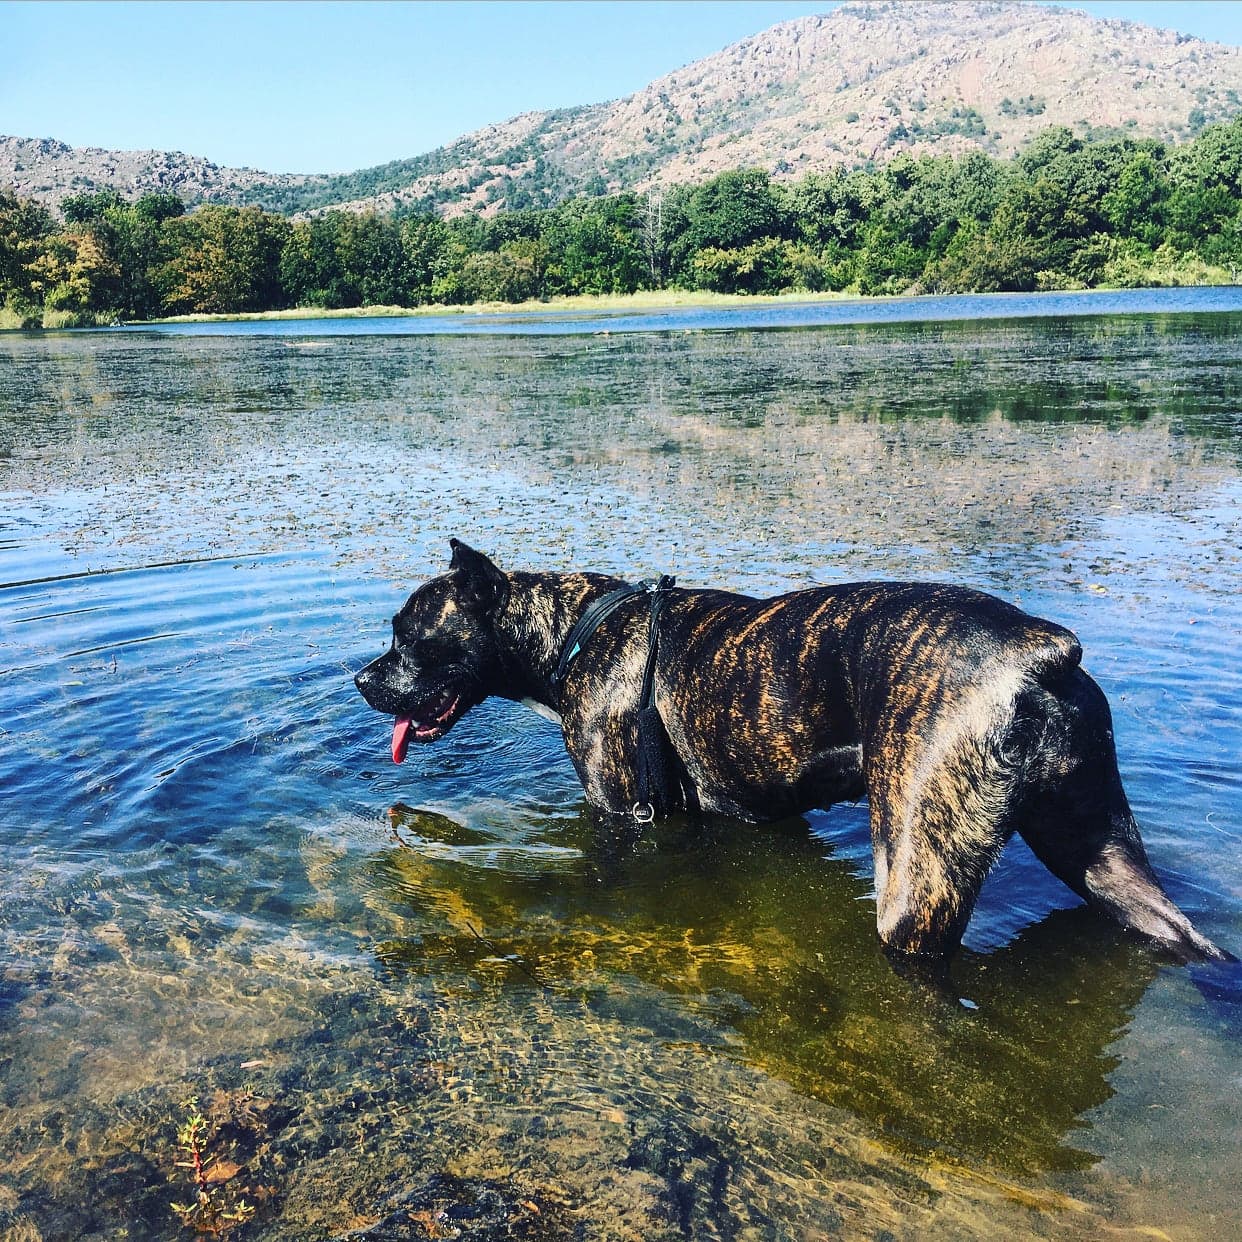 Dog wading in lake below mountain landscape of Wichita.